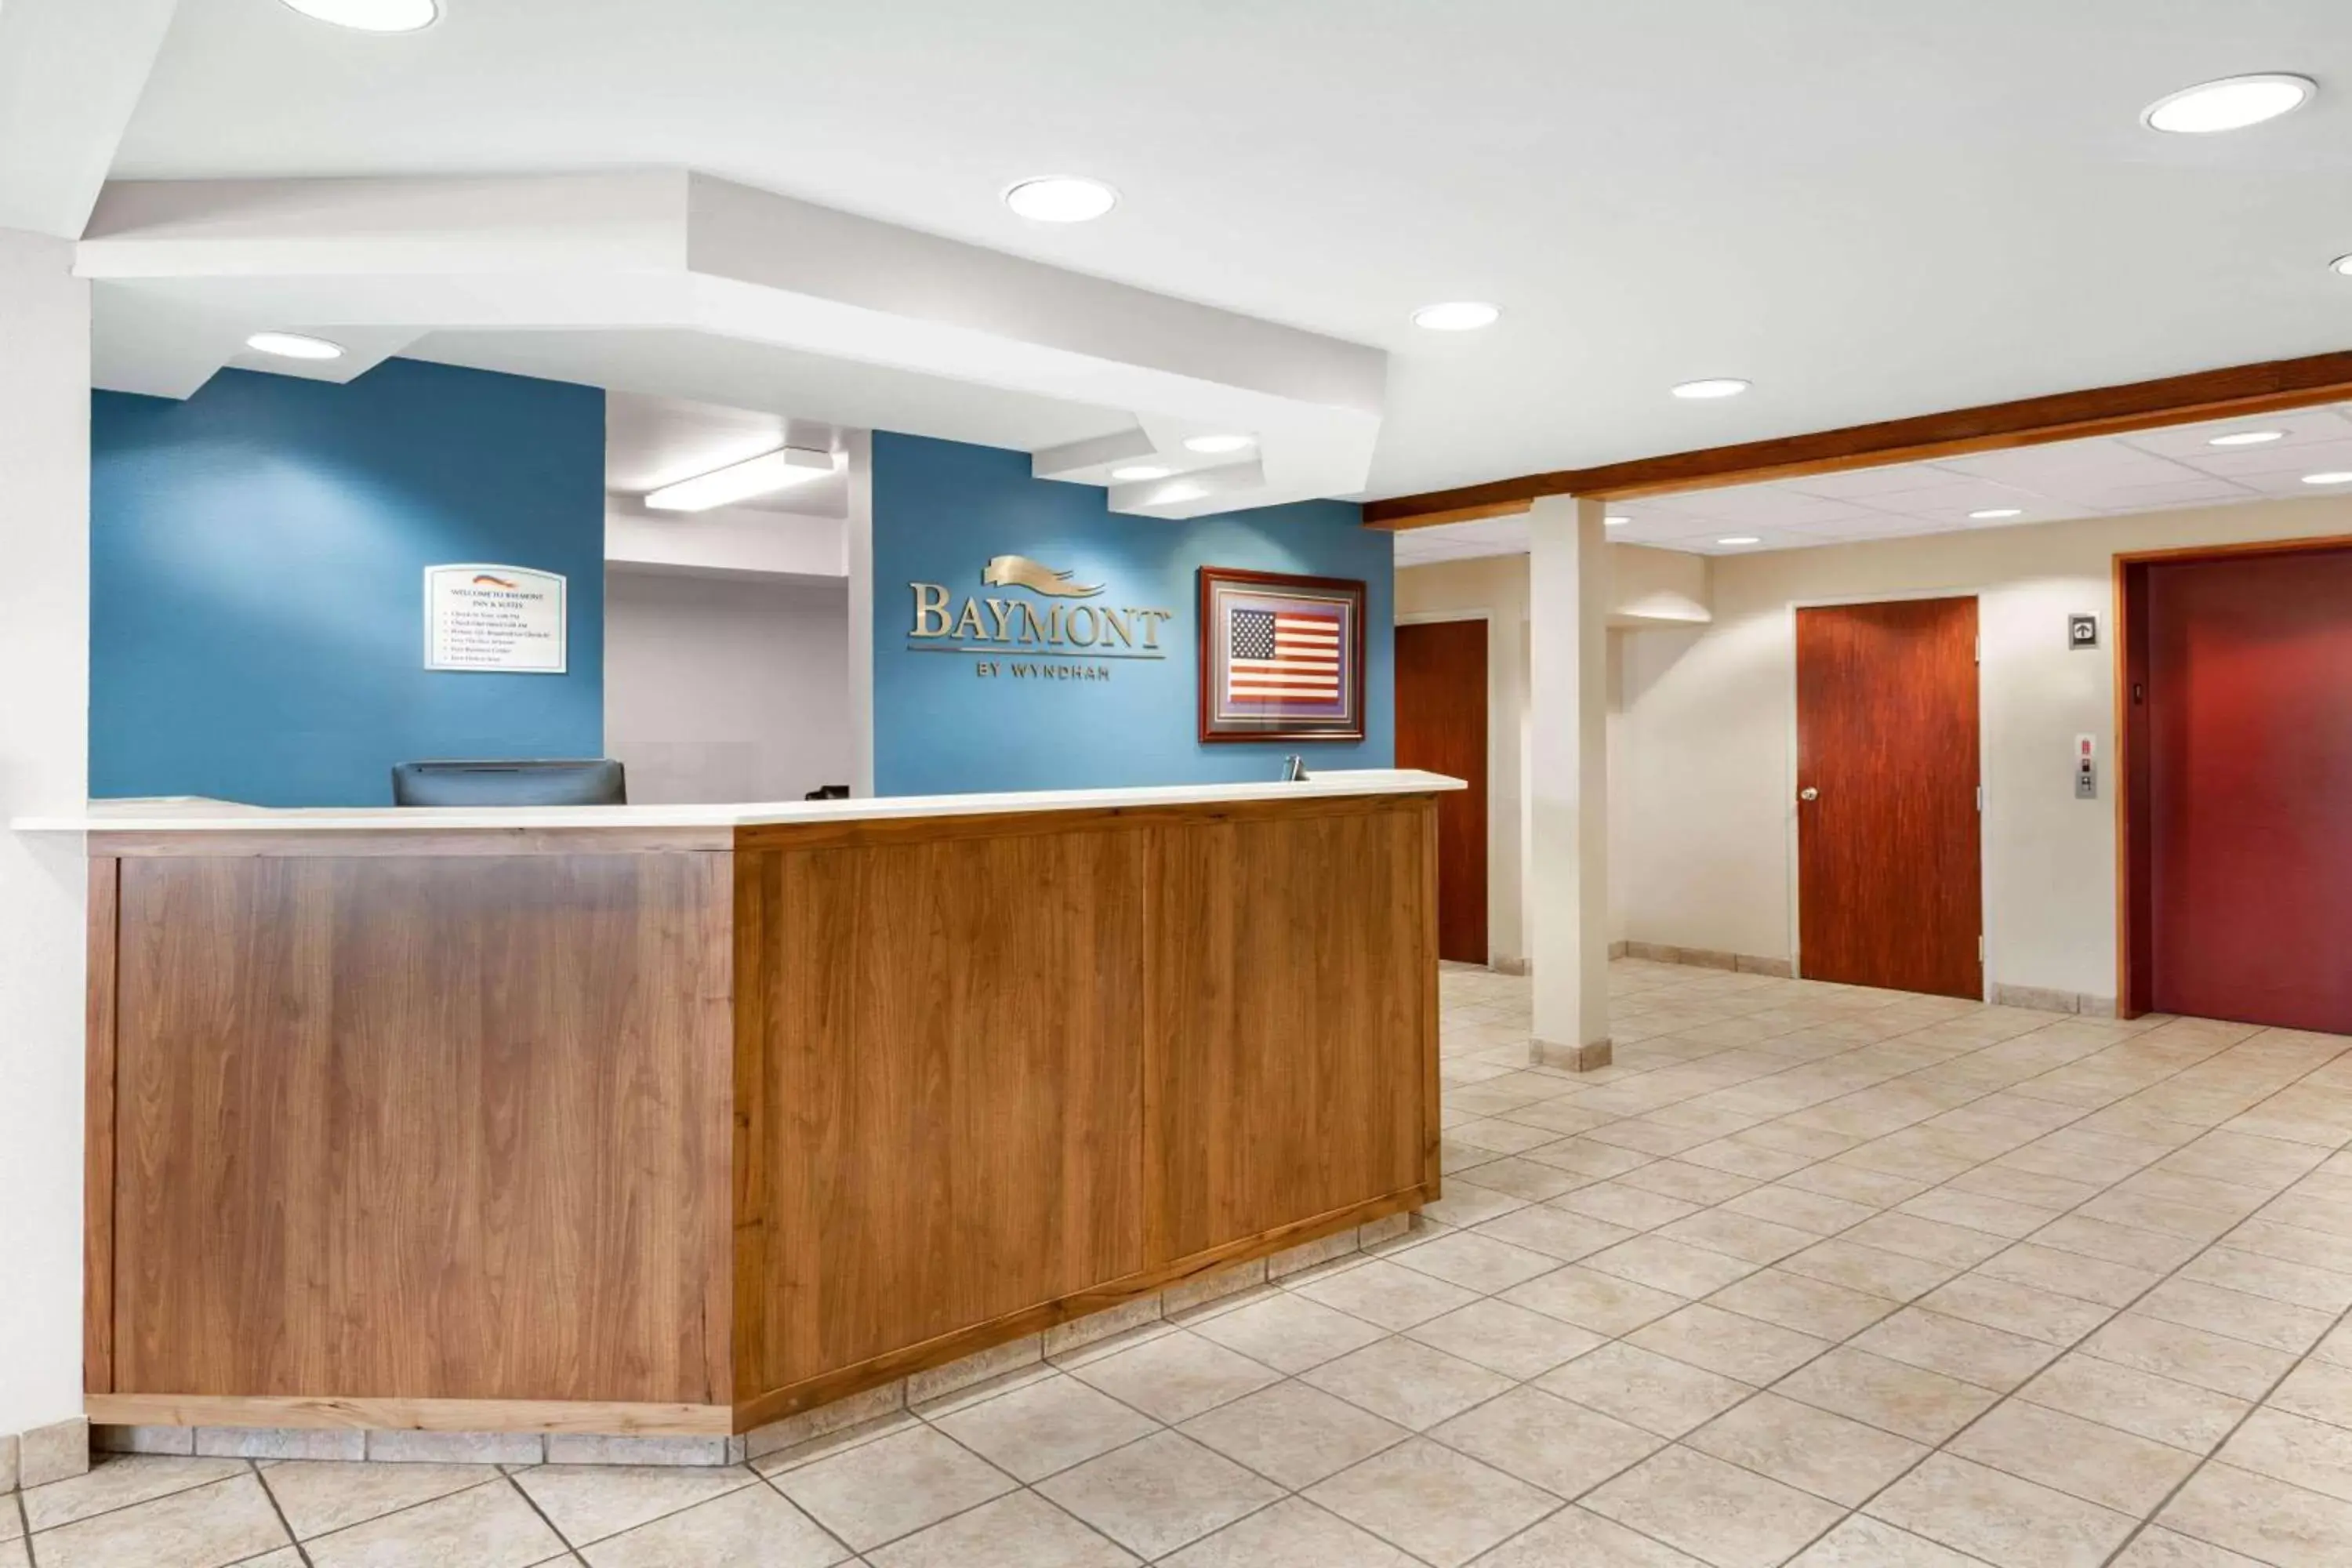 Lobby or reception, Lobby/Reception in Baymont by Wyndham Farmington